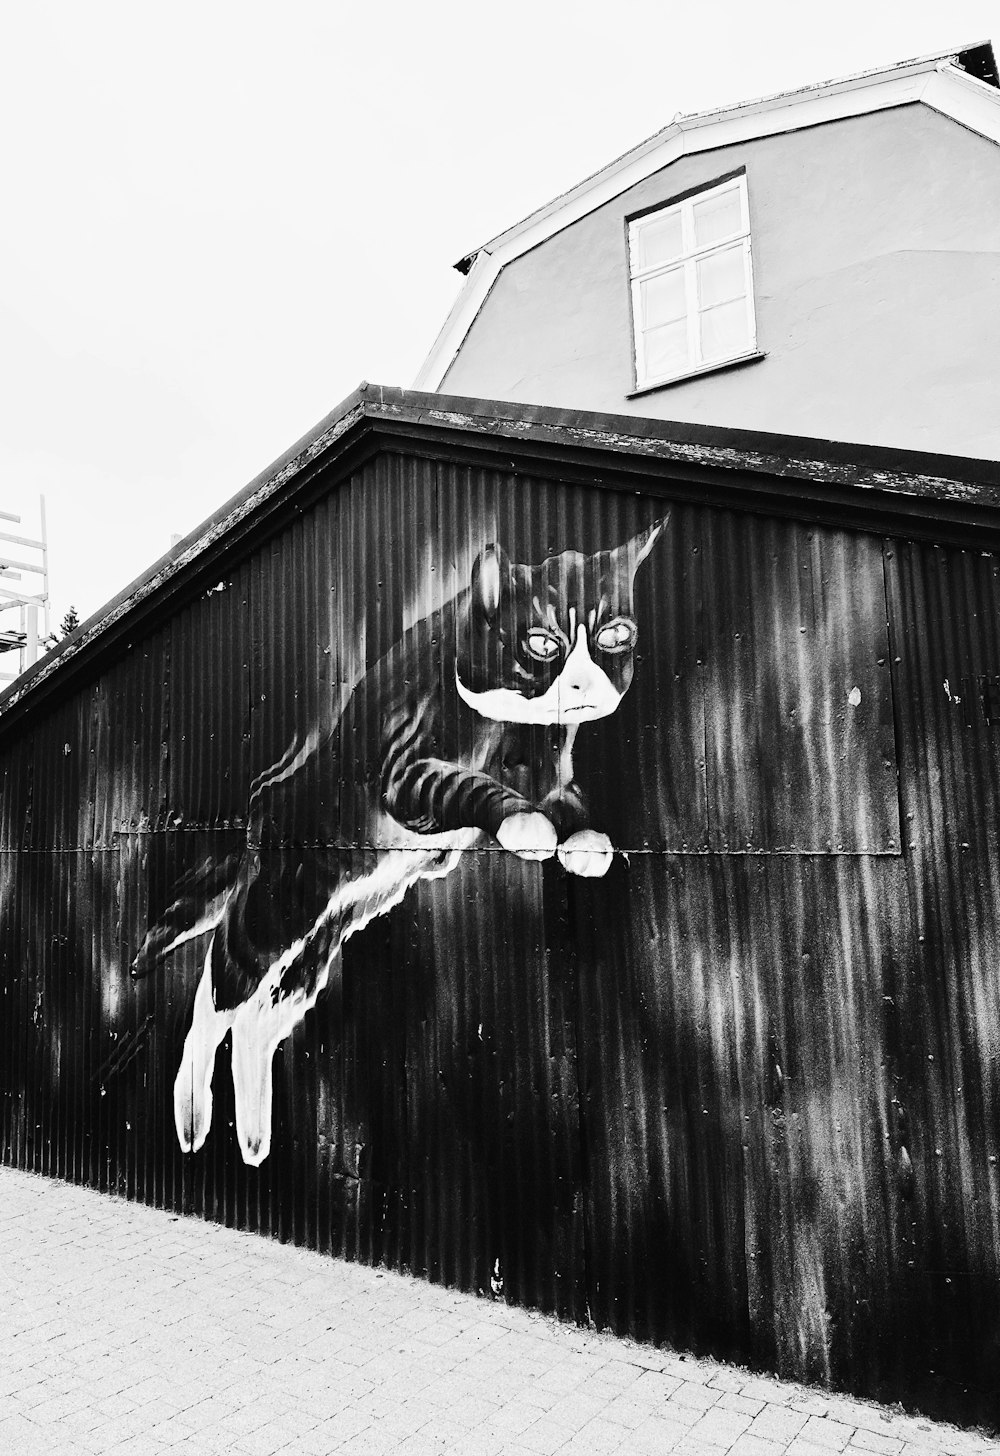 Une photo en noir et blanc d’un skateboarder sur un mur